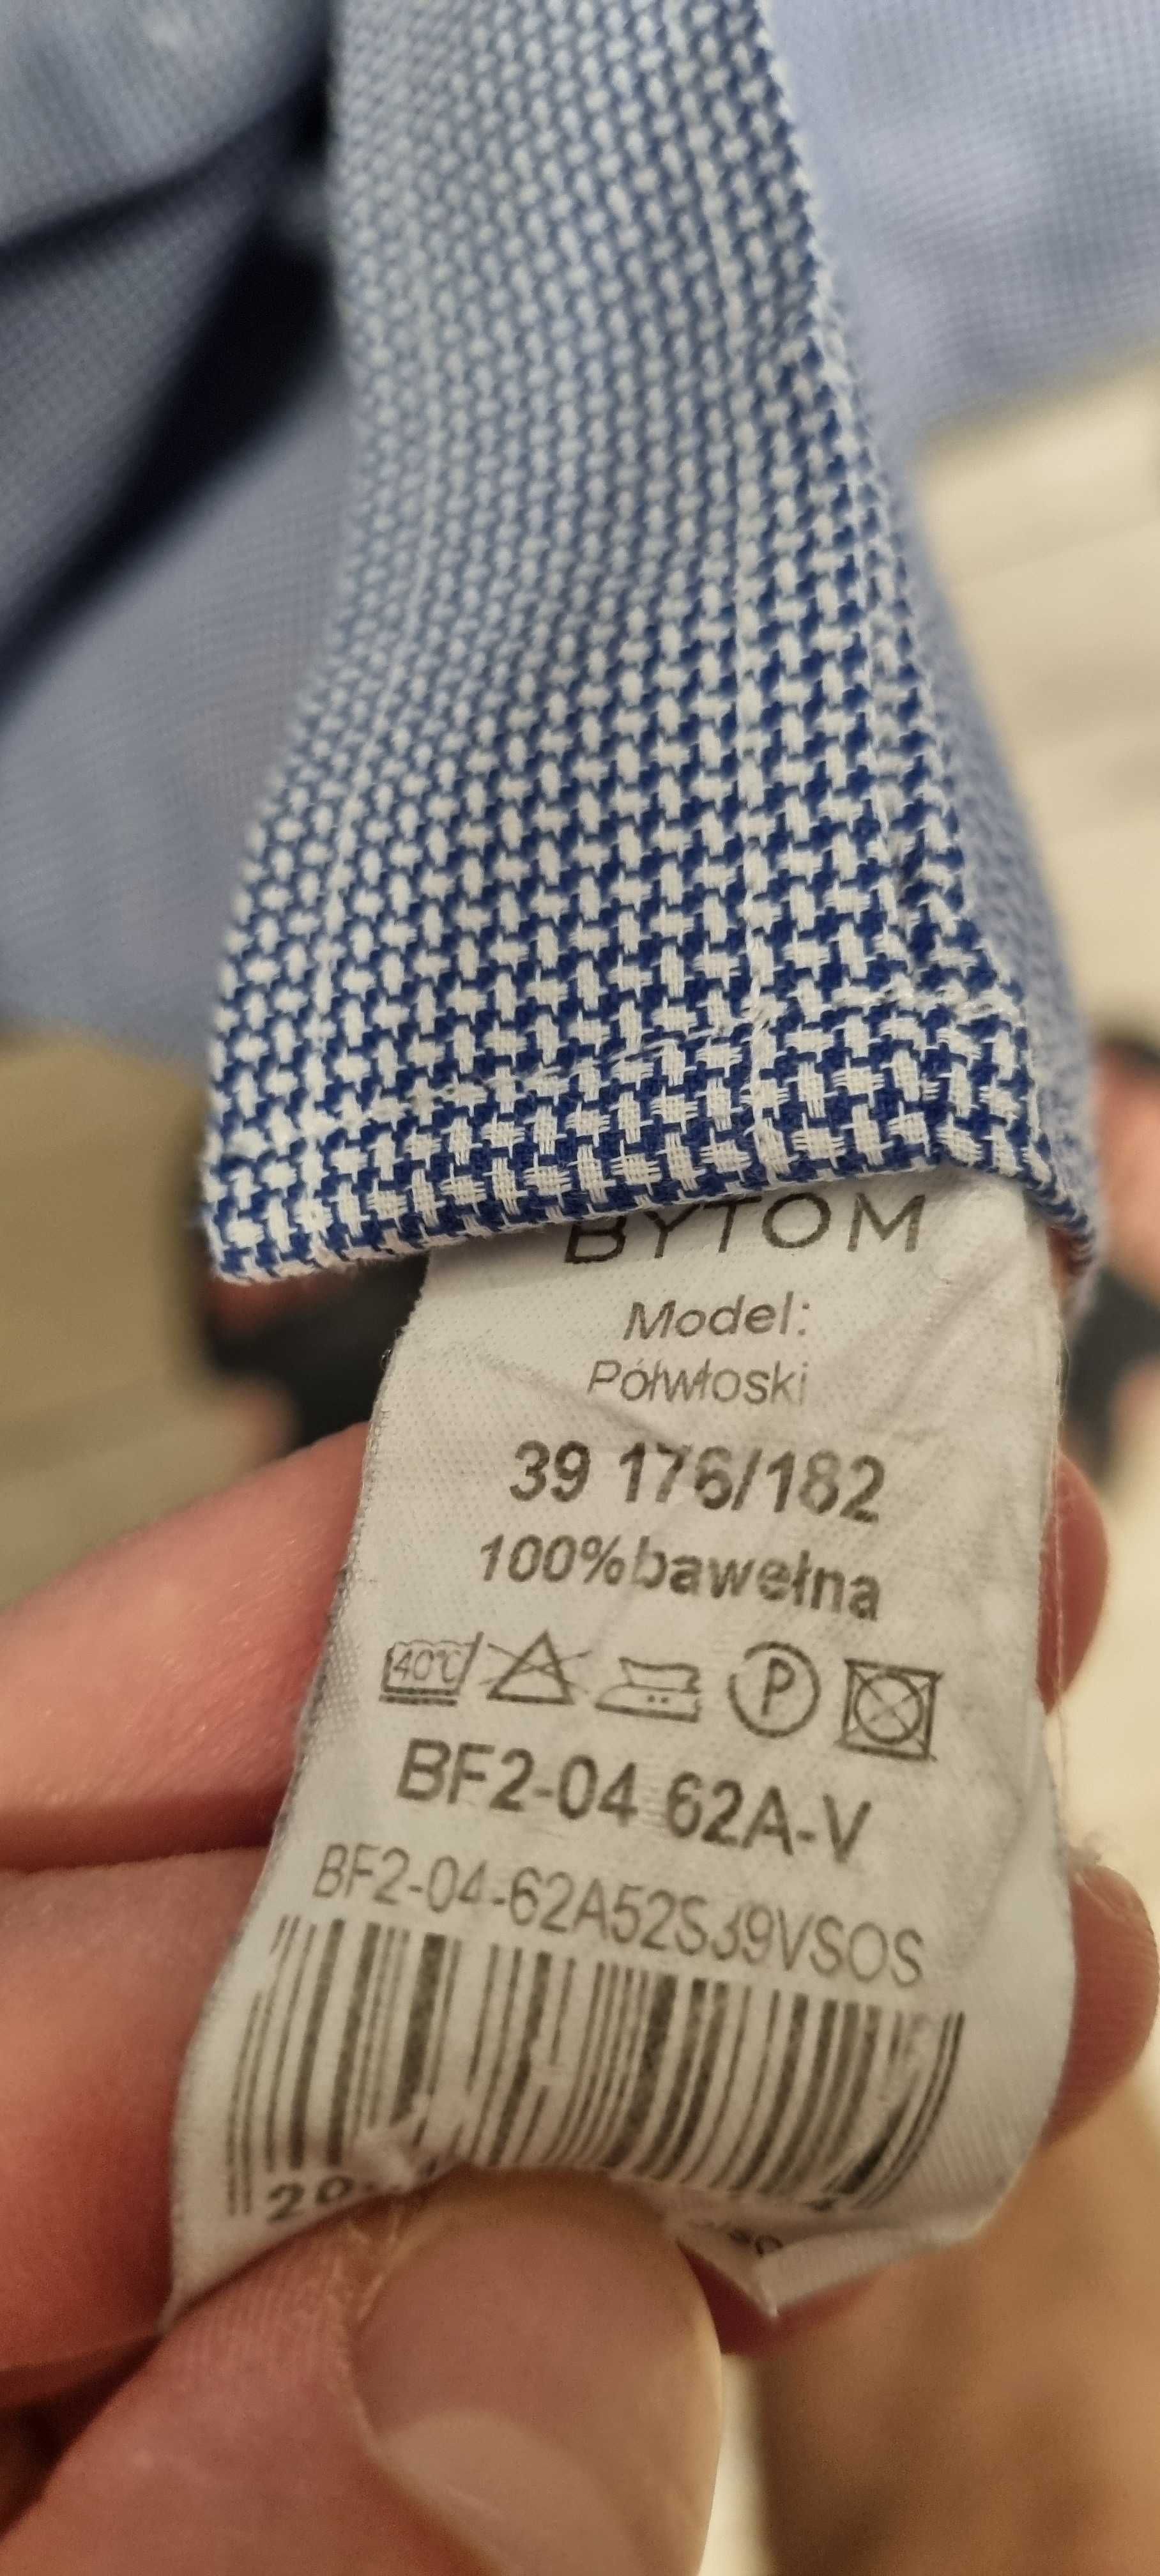 Koszula Bytom, elegancka, niebieska w pepitkę, bawełna egipska,r. 39/M